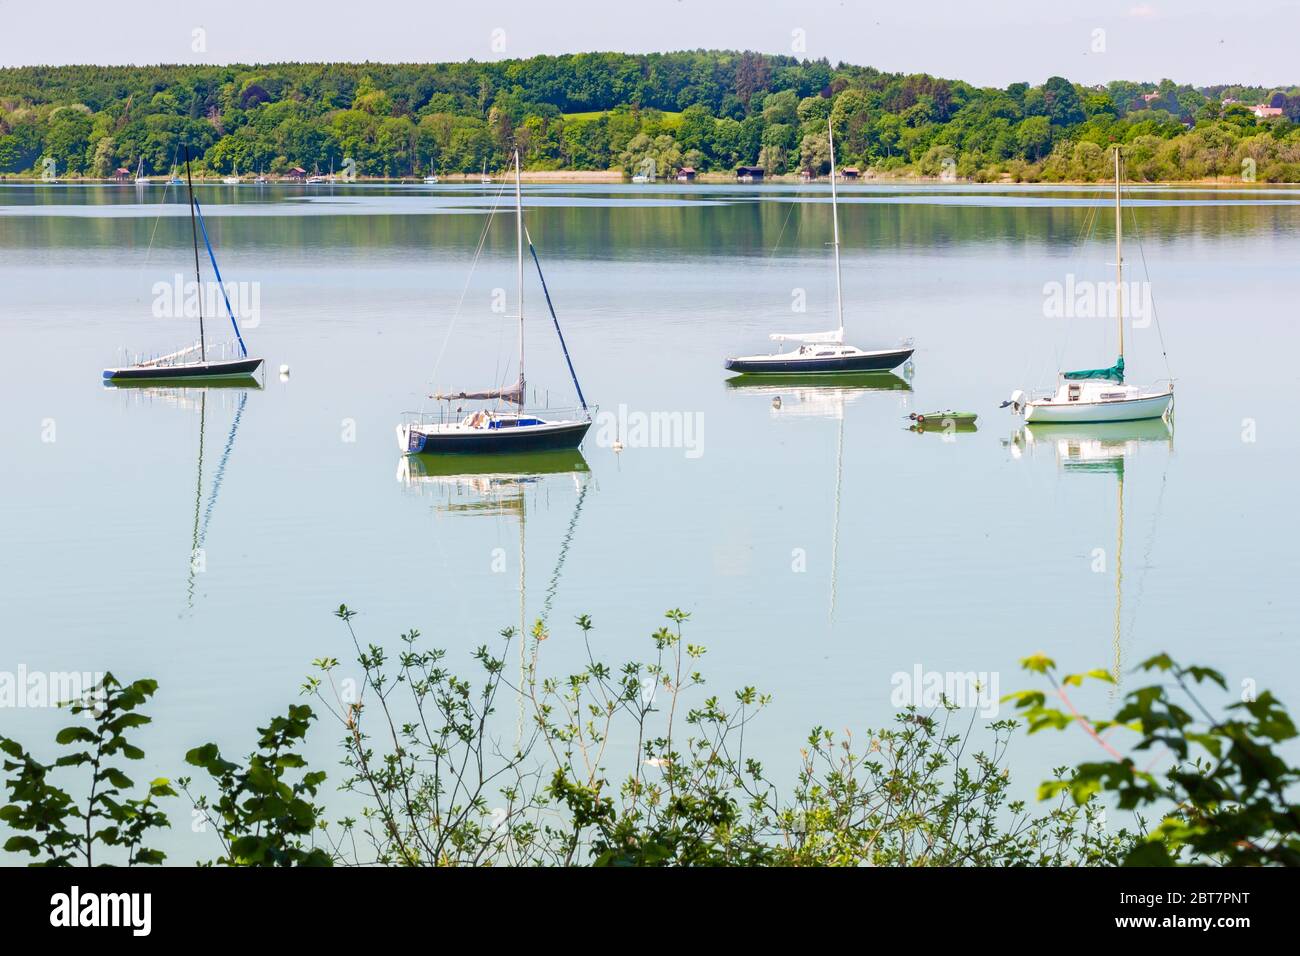 Paesaggio idilillico con quattro barche a vela. Foglie di cespugli in primo piano. Catturato al Lago Ammer (Ammersee). Popolare destinazione turistica. Foto Stock